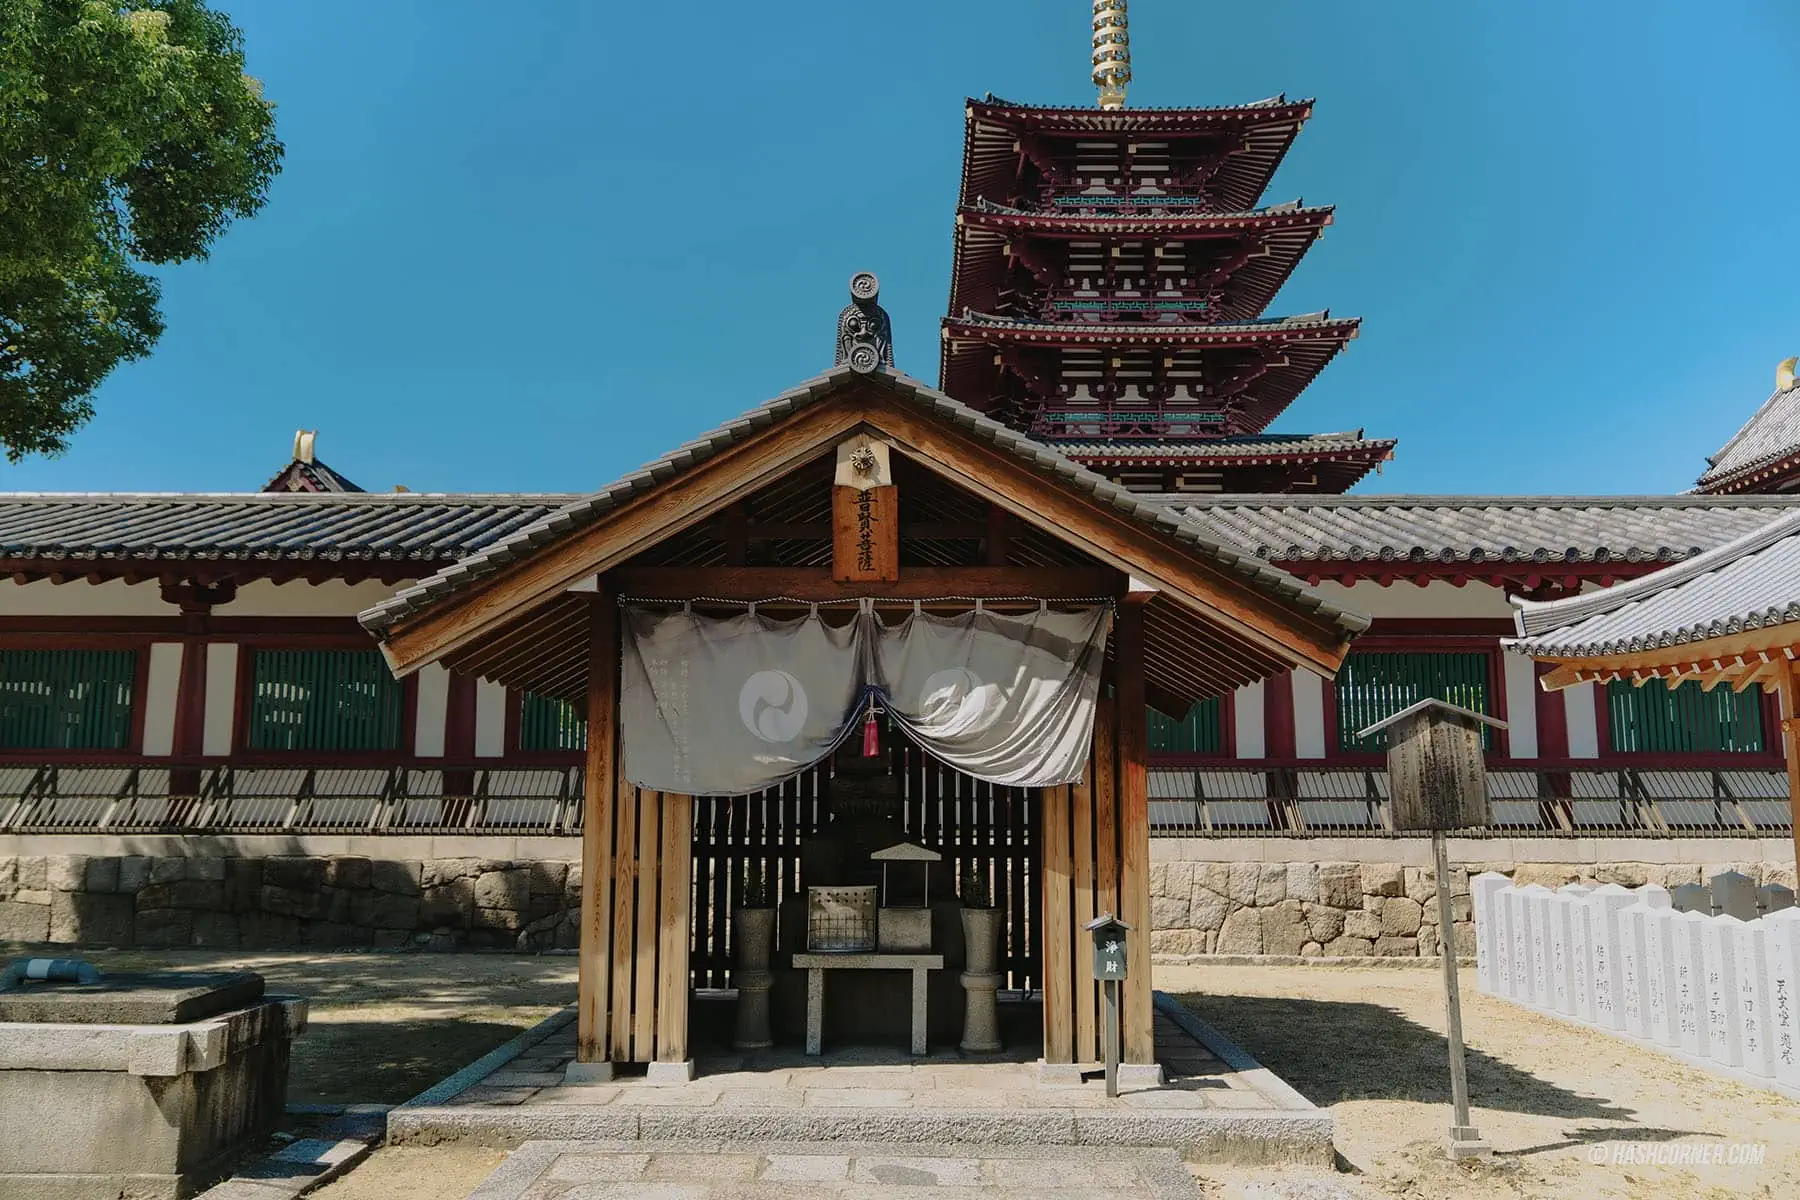 รีวิว วัดชิเทนโนจิ (Shitennoji Temple) x โอซาก้า วัดเก่าแก่ 1,400 ปี แห่งเมืองโอซาก้า